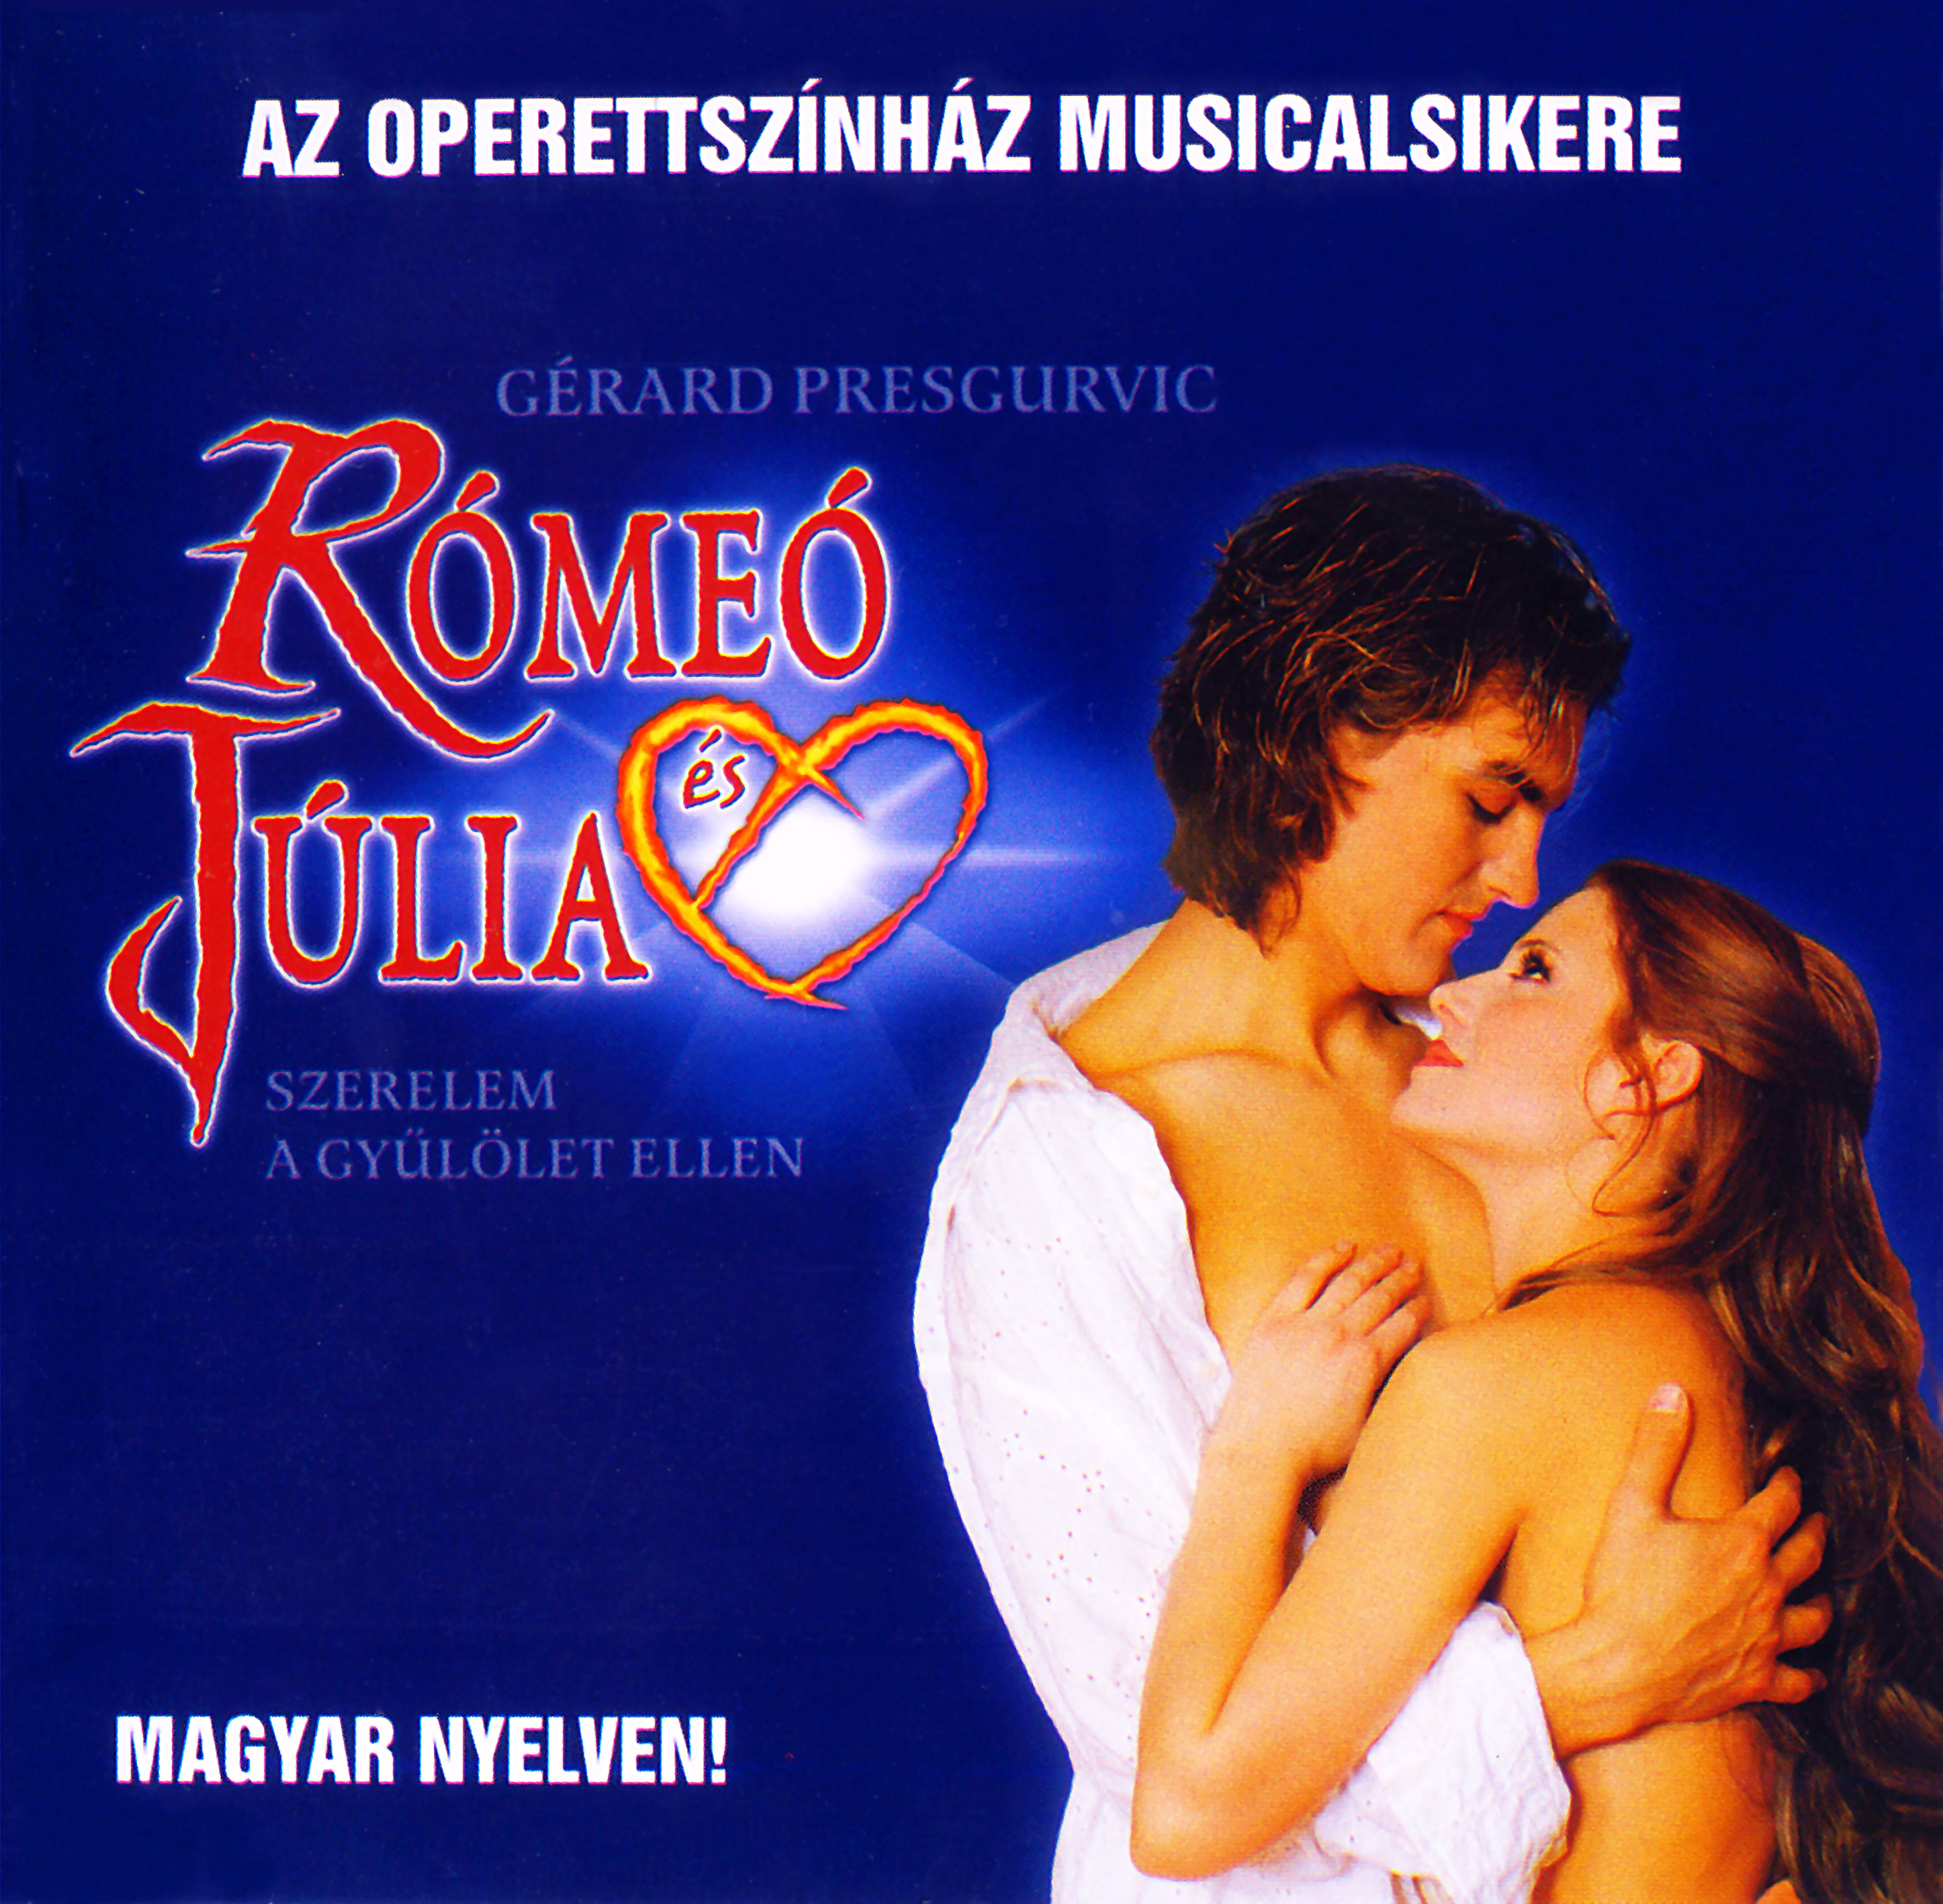 Rómeó & Júlia Musical CD